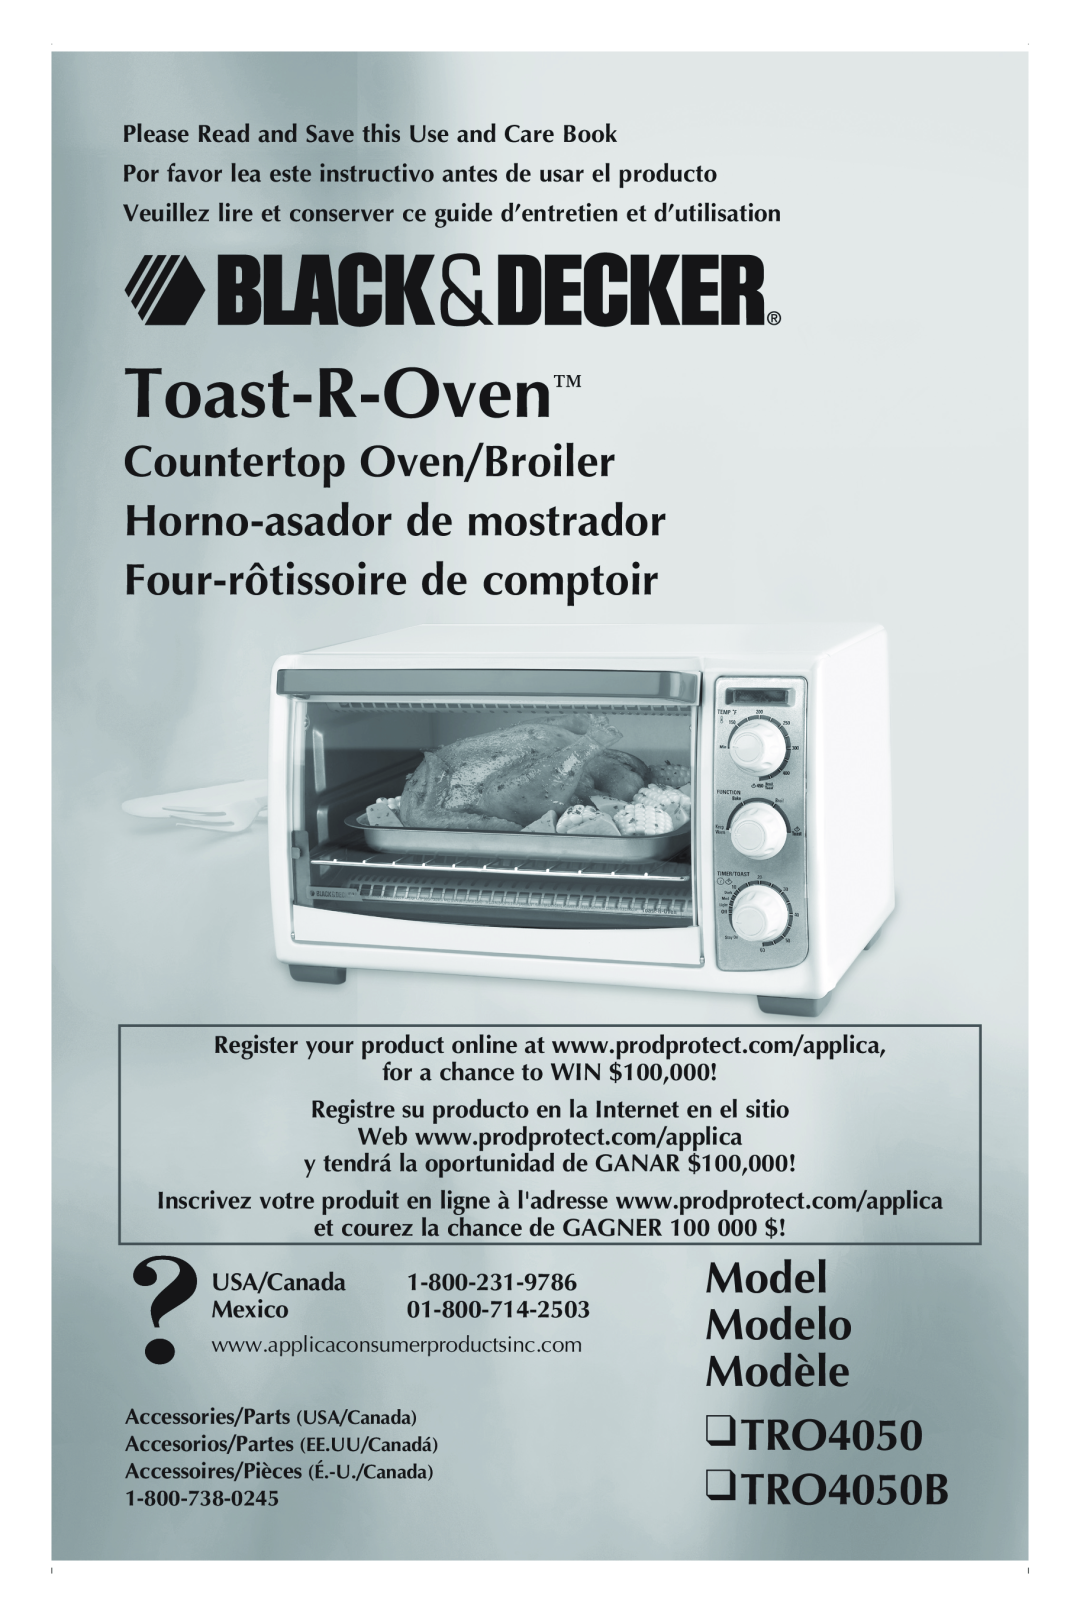 Black & Decker TRO4050 manual Countertop Oven/Broiler Horno-asador de mostrador, Four-rôtissoire de comptoir, Toast-R-Oven 